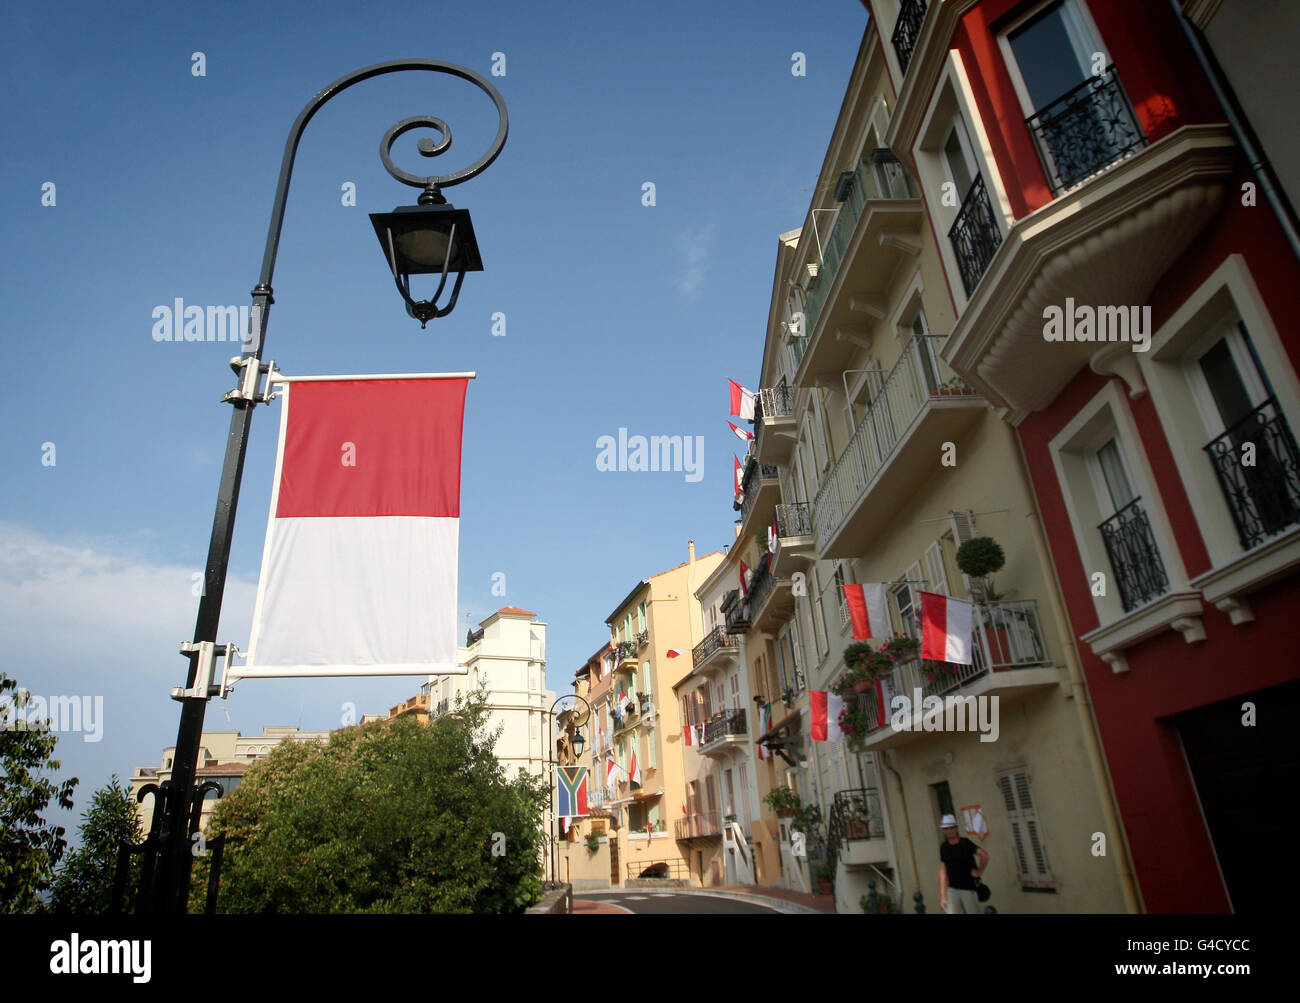 Flaggen von Monaco in den Straßen von Monte Carlo, Monaco, vor der Hochzeit von Prinz Albert II. Und Charlene Wittstock. Stockfoto